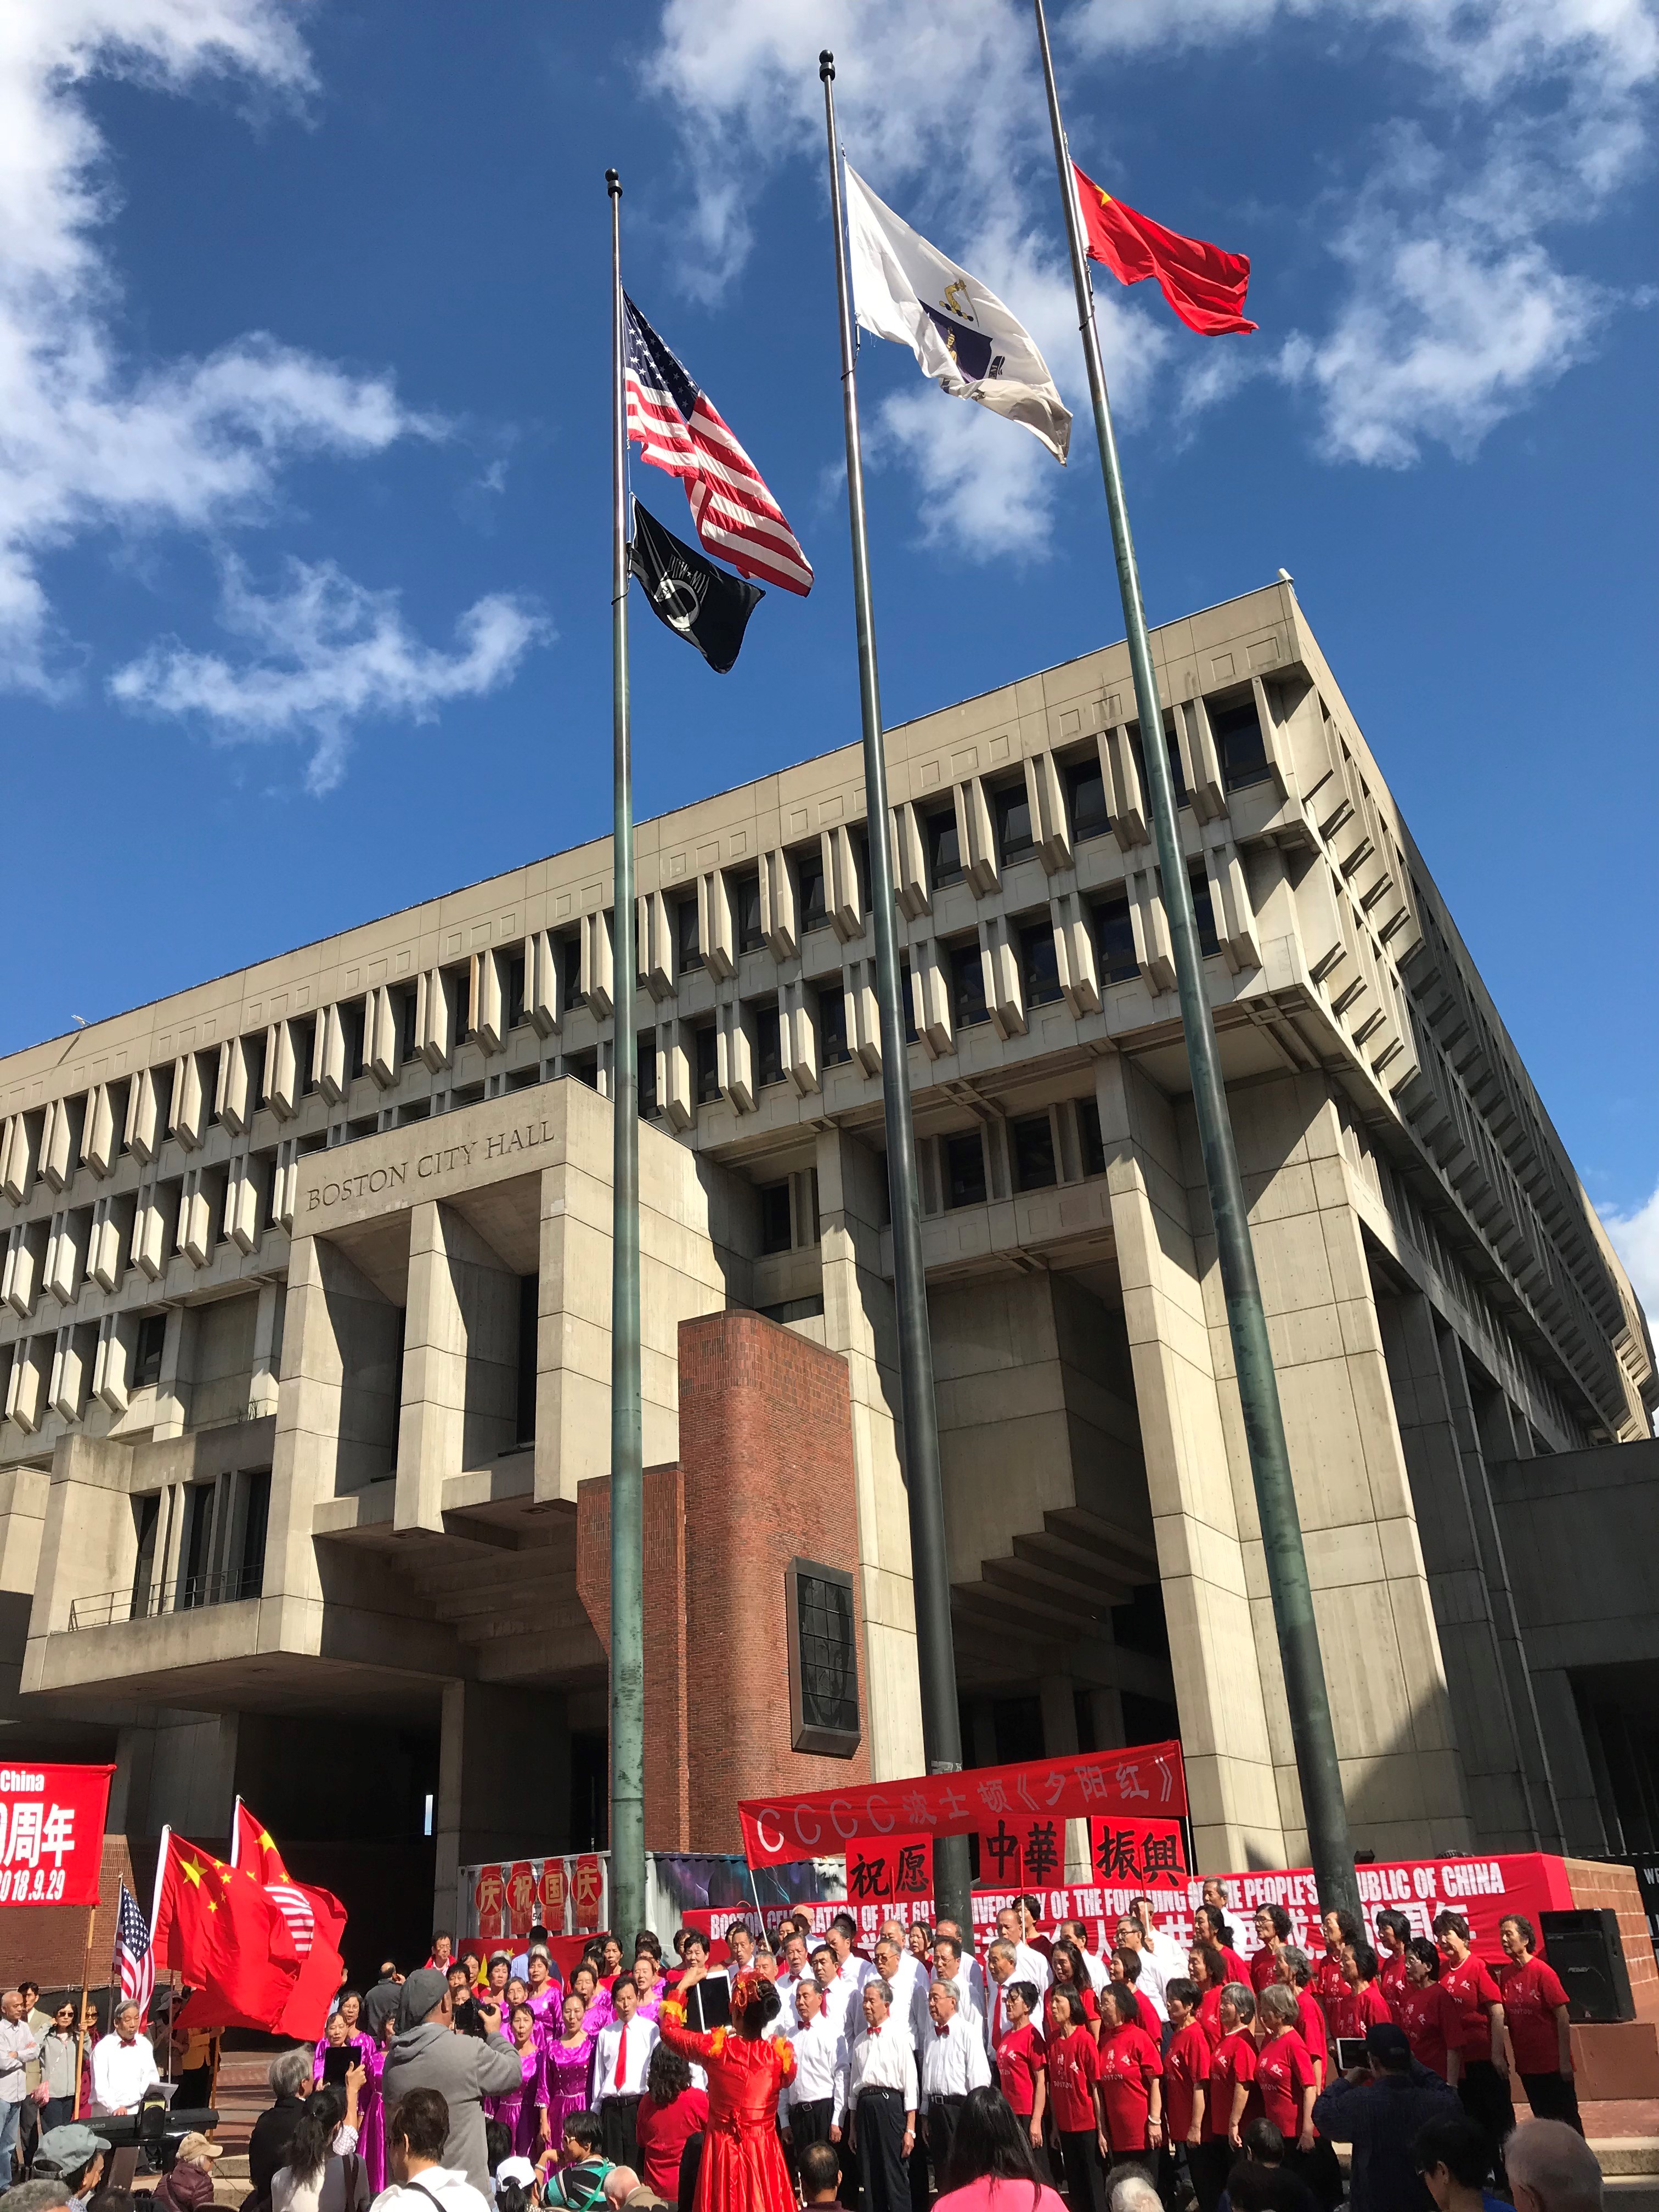 波士顿市府广场五星红旗高高飘扬  波士顿侨学各界热烈庆祝中国成立69周年